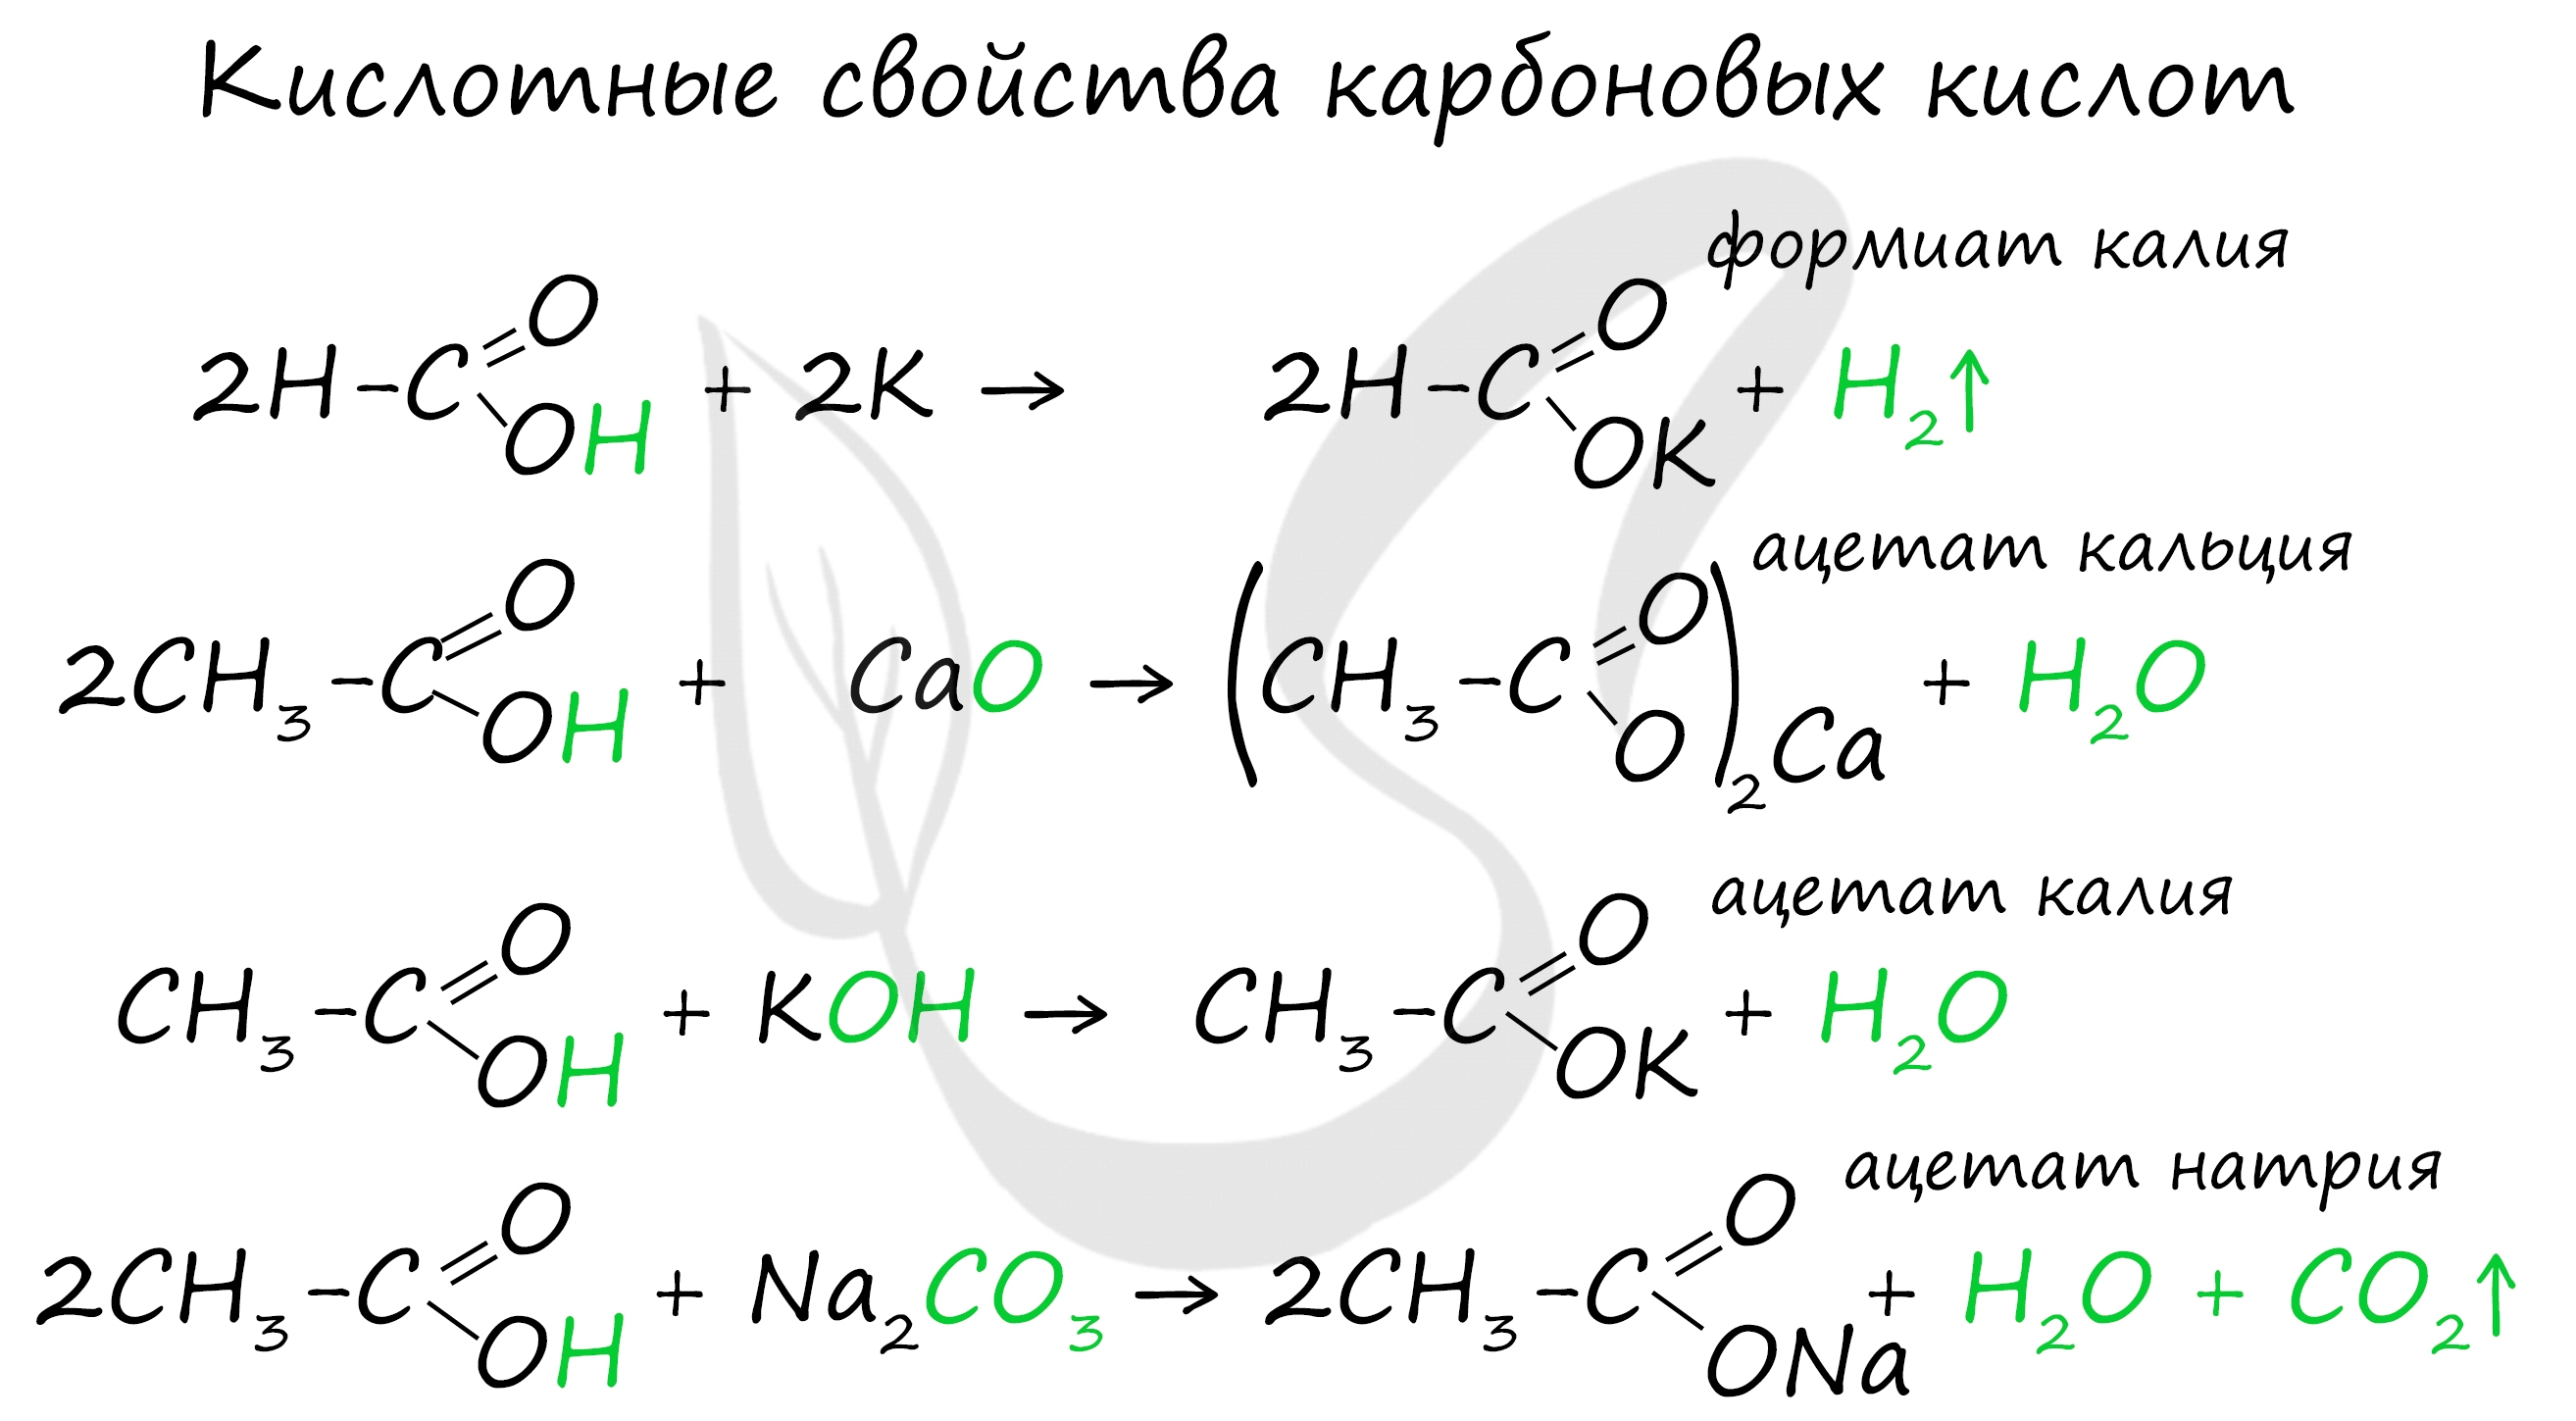 Карбоновая кислота кальций. Кислотные и основные свойства карбоновых кислот. Химические свойства карбоновых кислот 10 класс таблица. Химические свойства карбоновых кислот. Химические свойства карбоновых кислот таблица.